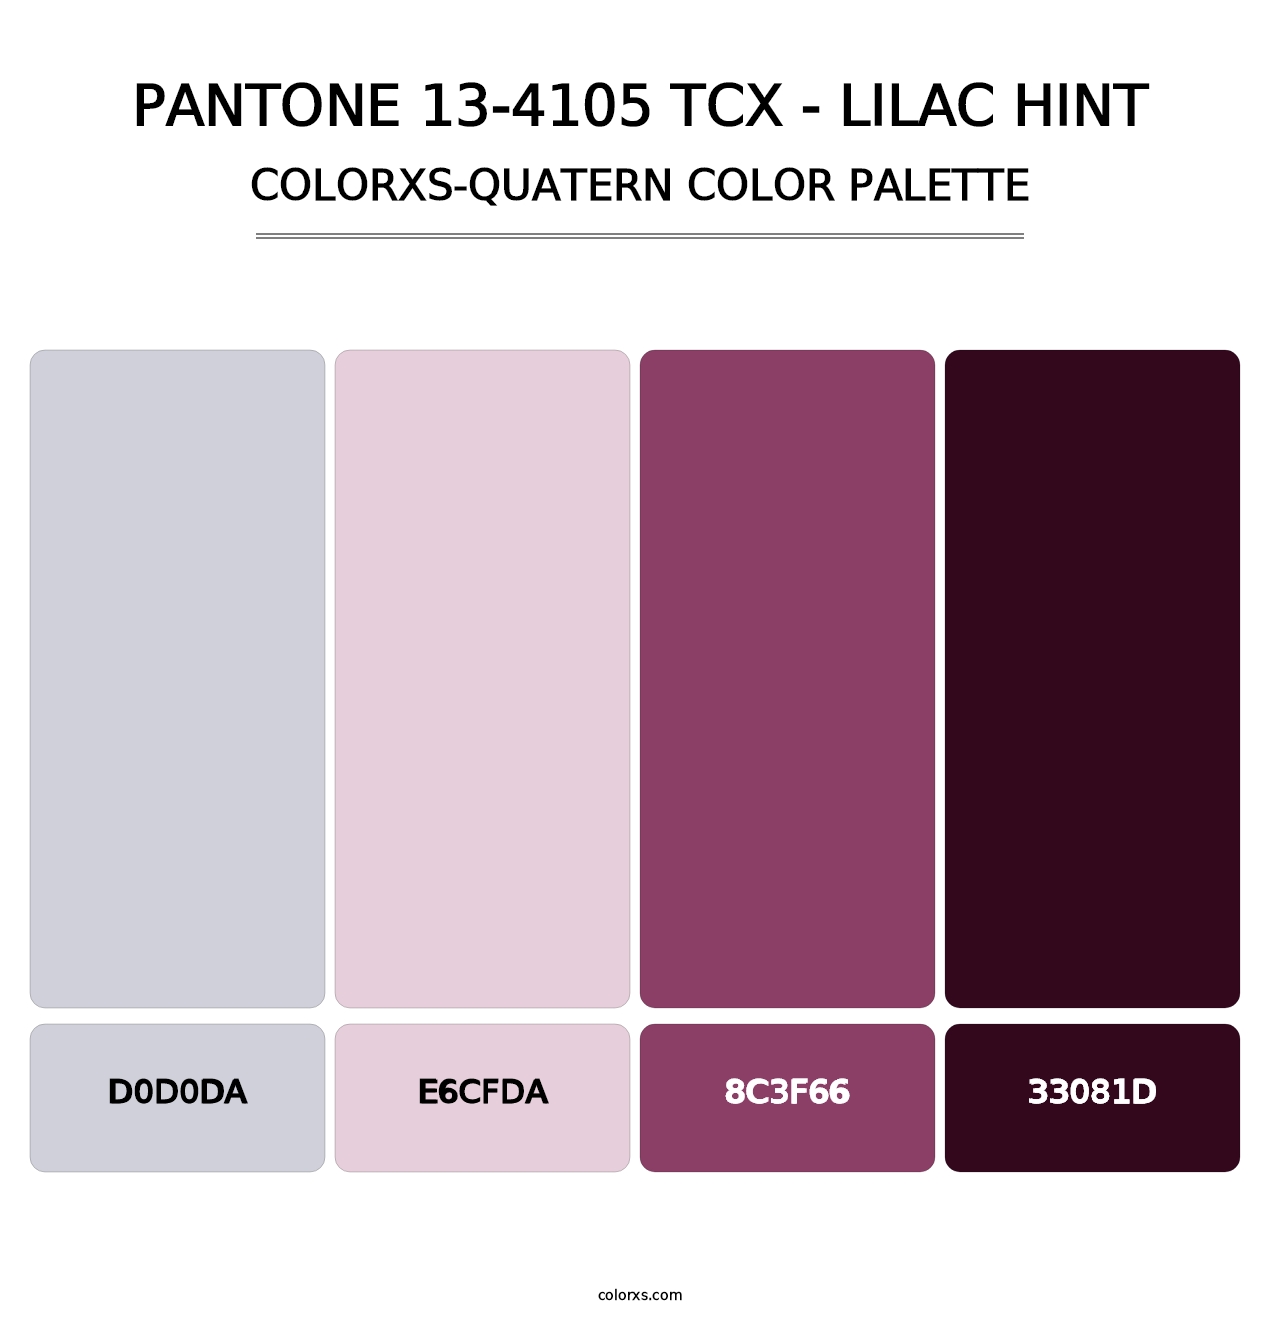 PANTONE 13-4105 TCX - Lilac Hint - Colorxs Quatern Palette